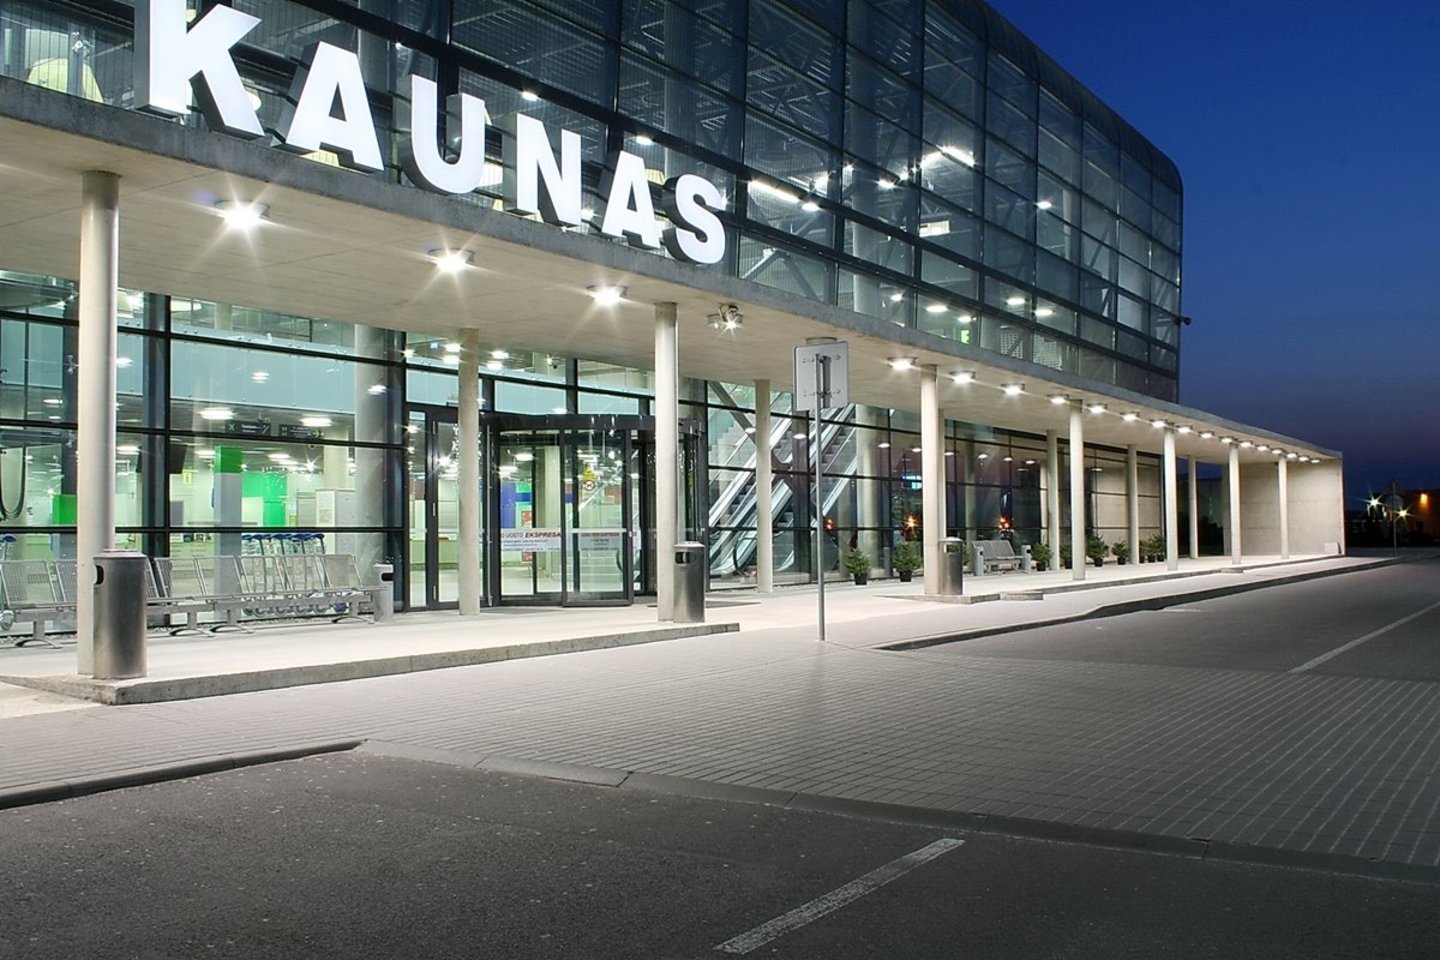 Orlaivių dažymo angaras įsikurs šiaurinėje Kauno oro uosto dalyje, daugiau nei 12 tūkst. kvadratinių metrų plote.<br> Kauno oro uosto nuotr. 